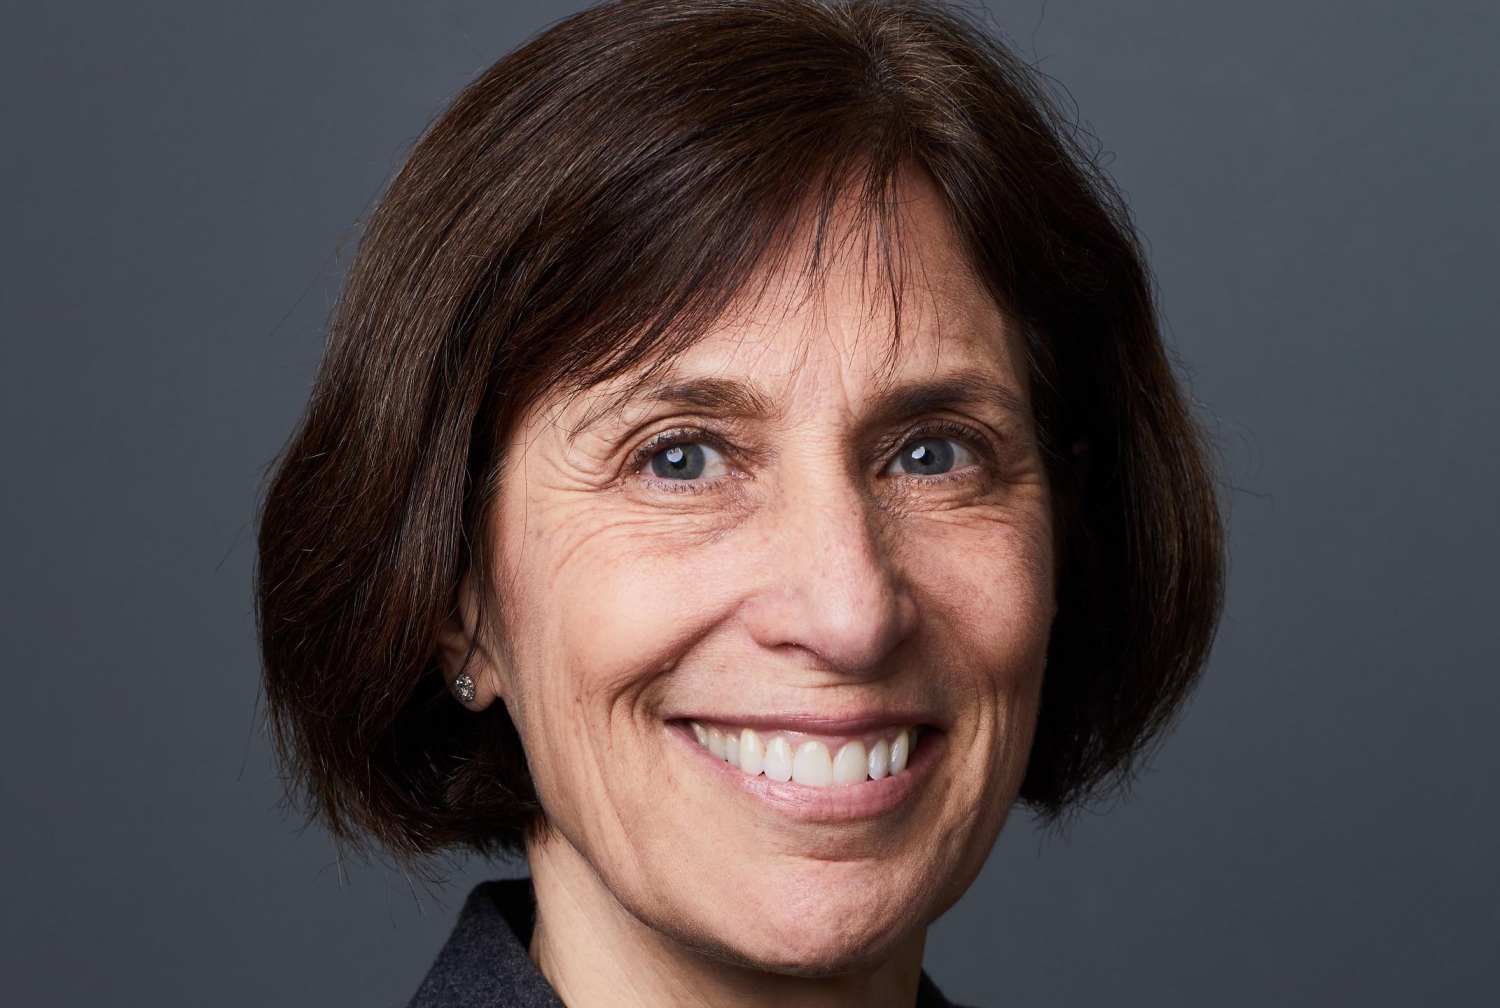 Dr. Linda Gerber